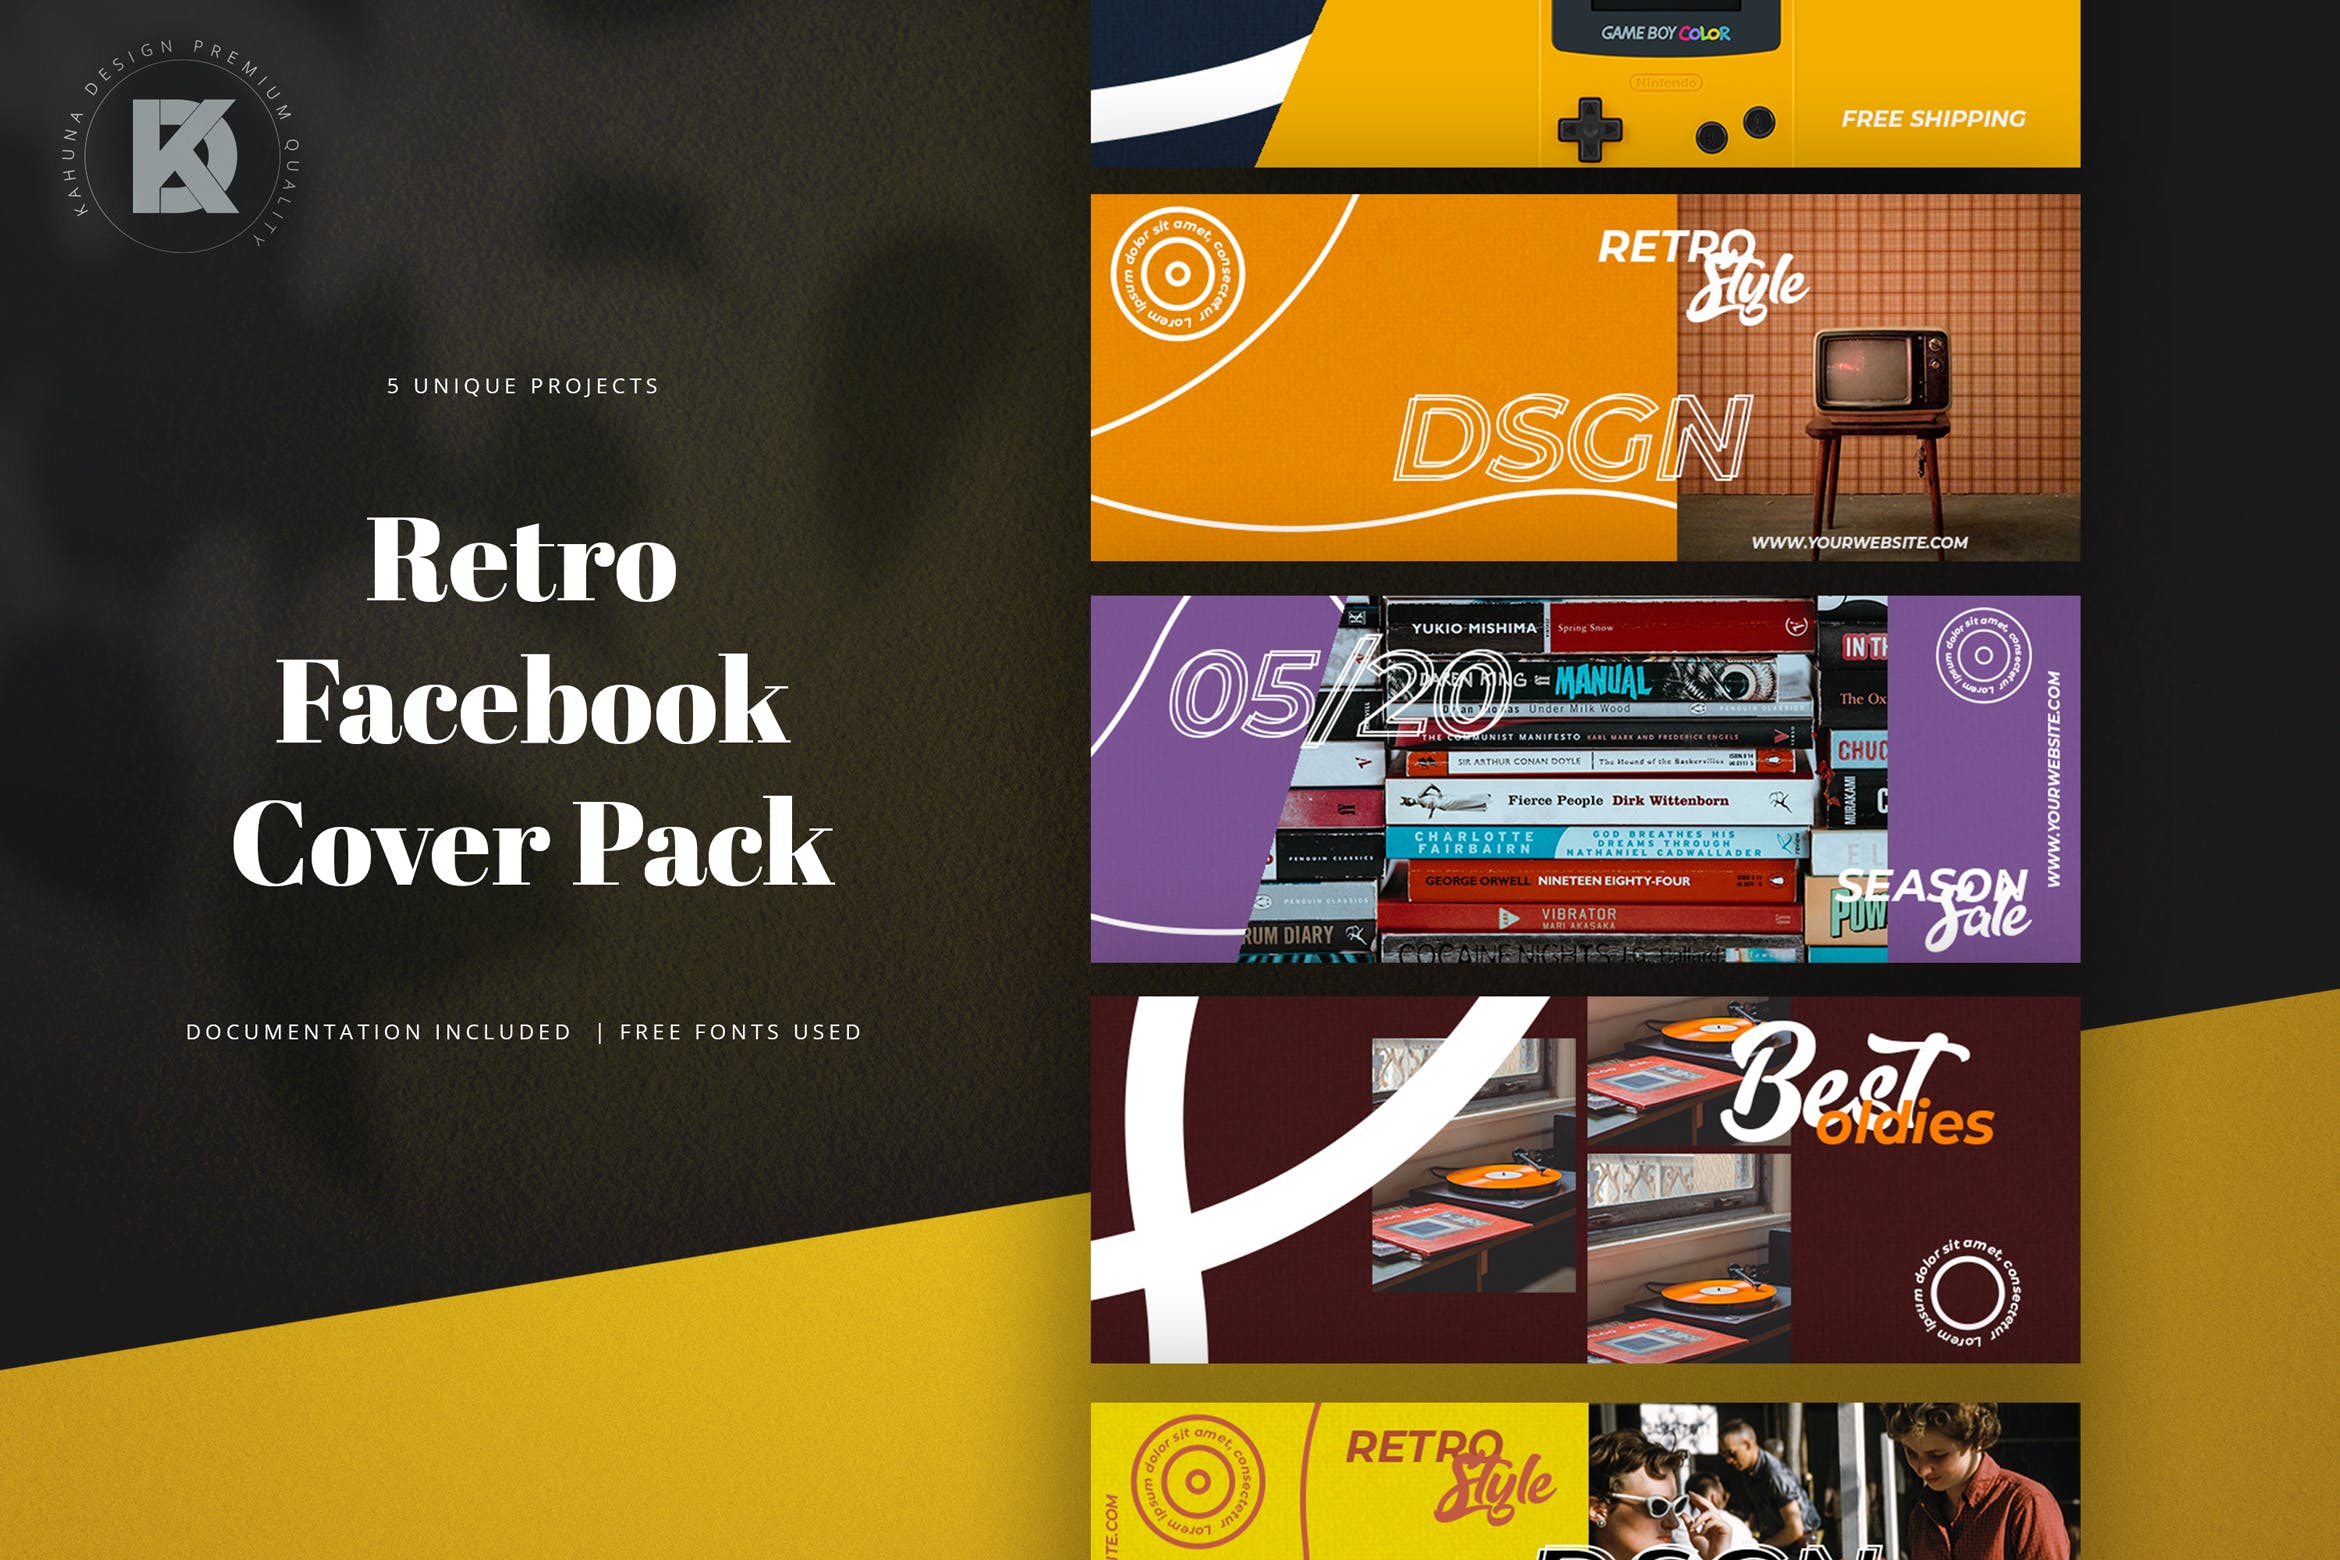 复古风格Facebook主页封面设计模板第一素材精选 Retro Facebook Cover Pack插图